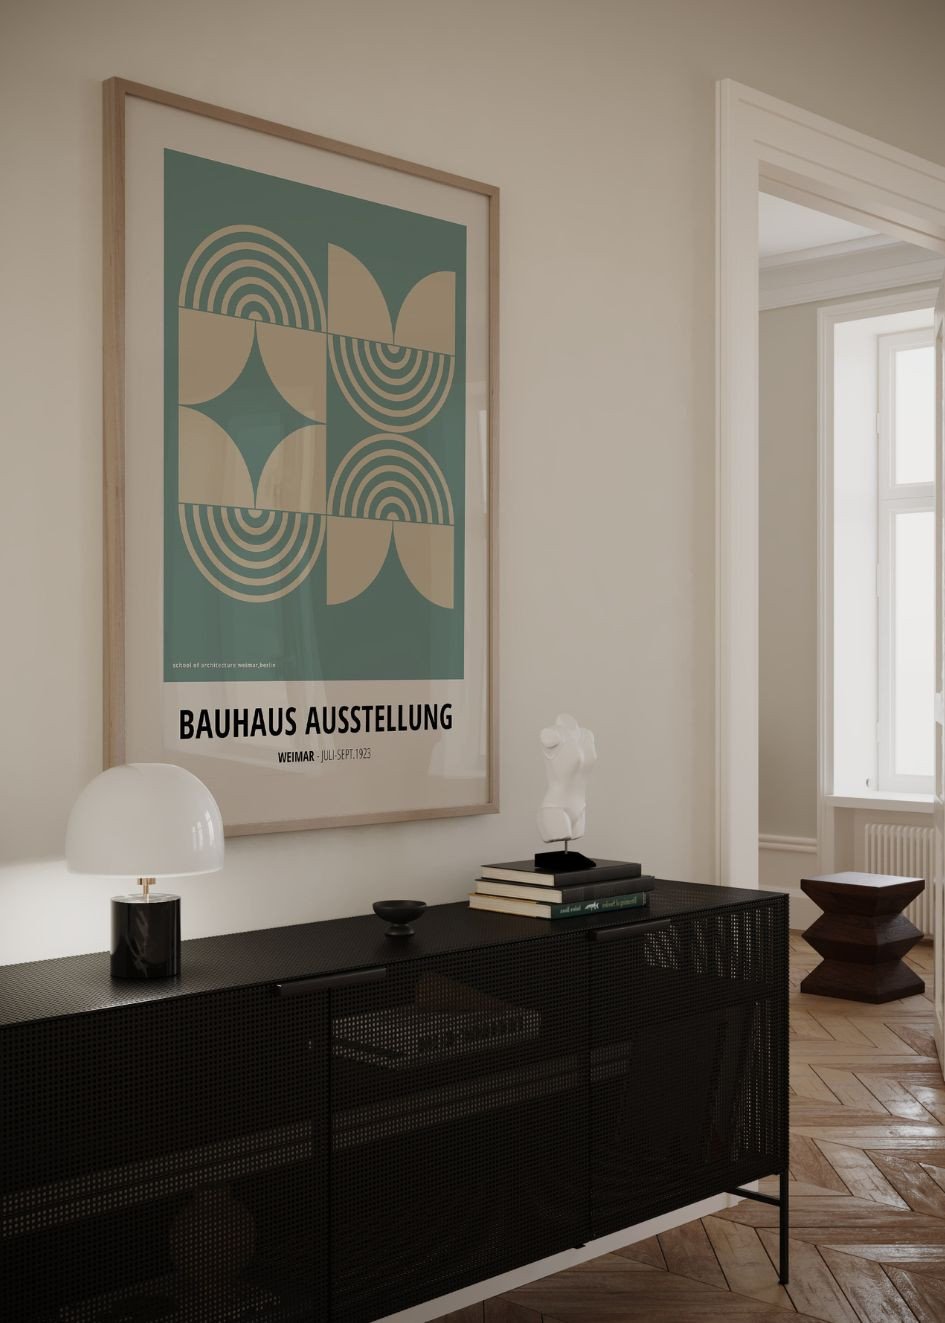 Bauhaus Ausstellung №21 Poster